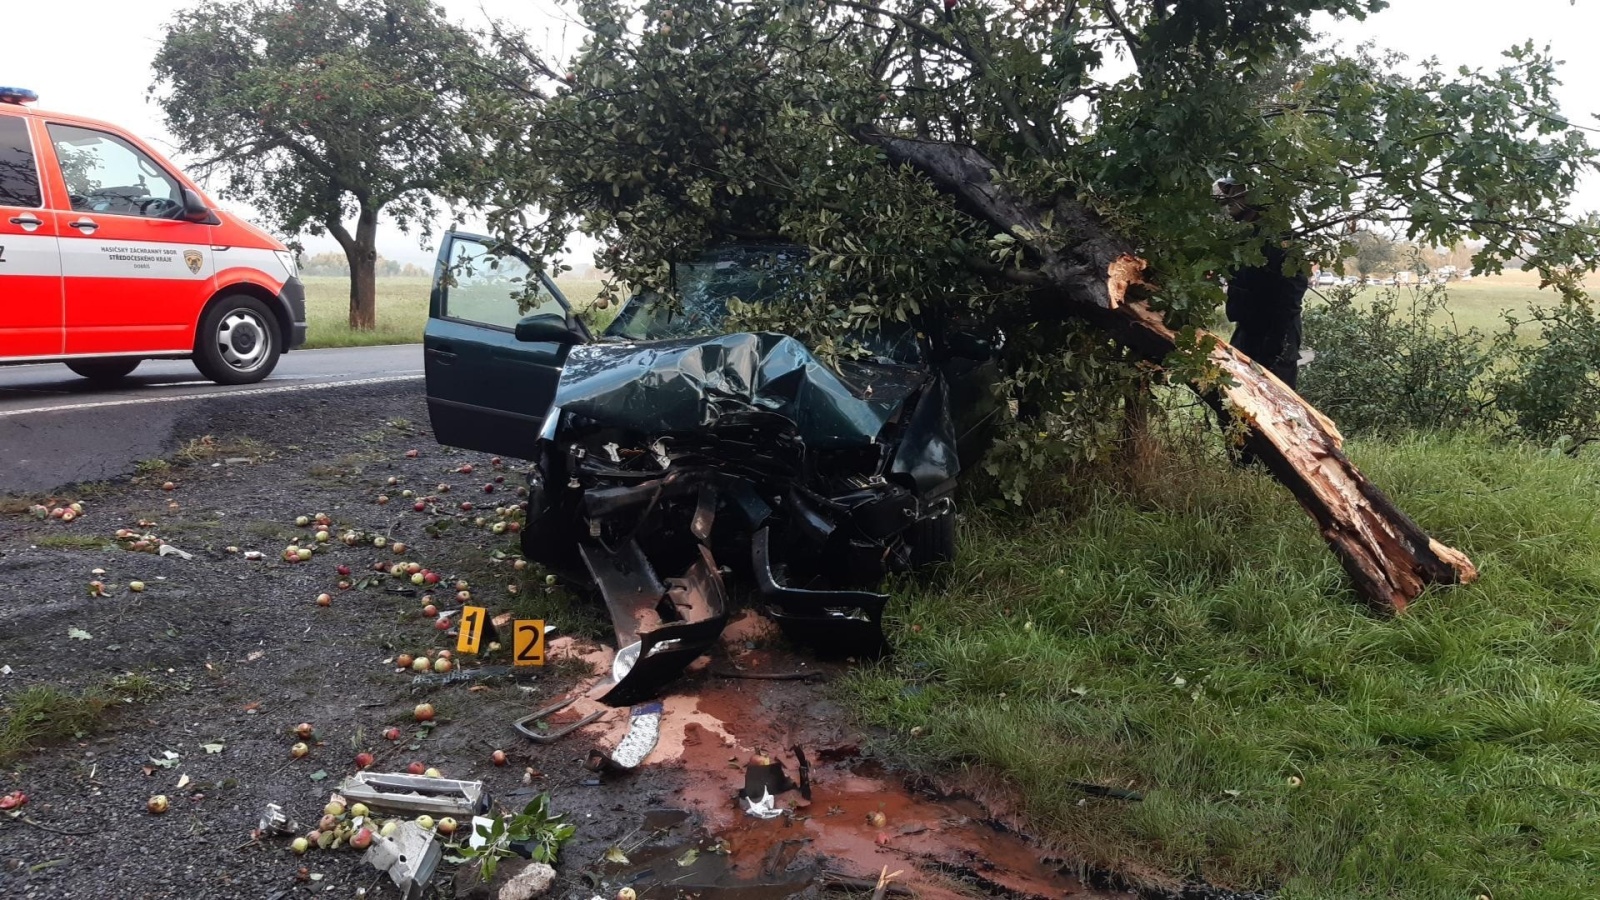 146-Havárie osobního automobilu nedaleko obce Hostomice na Berounsku.jpg